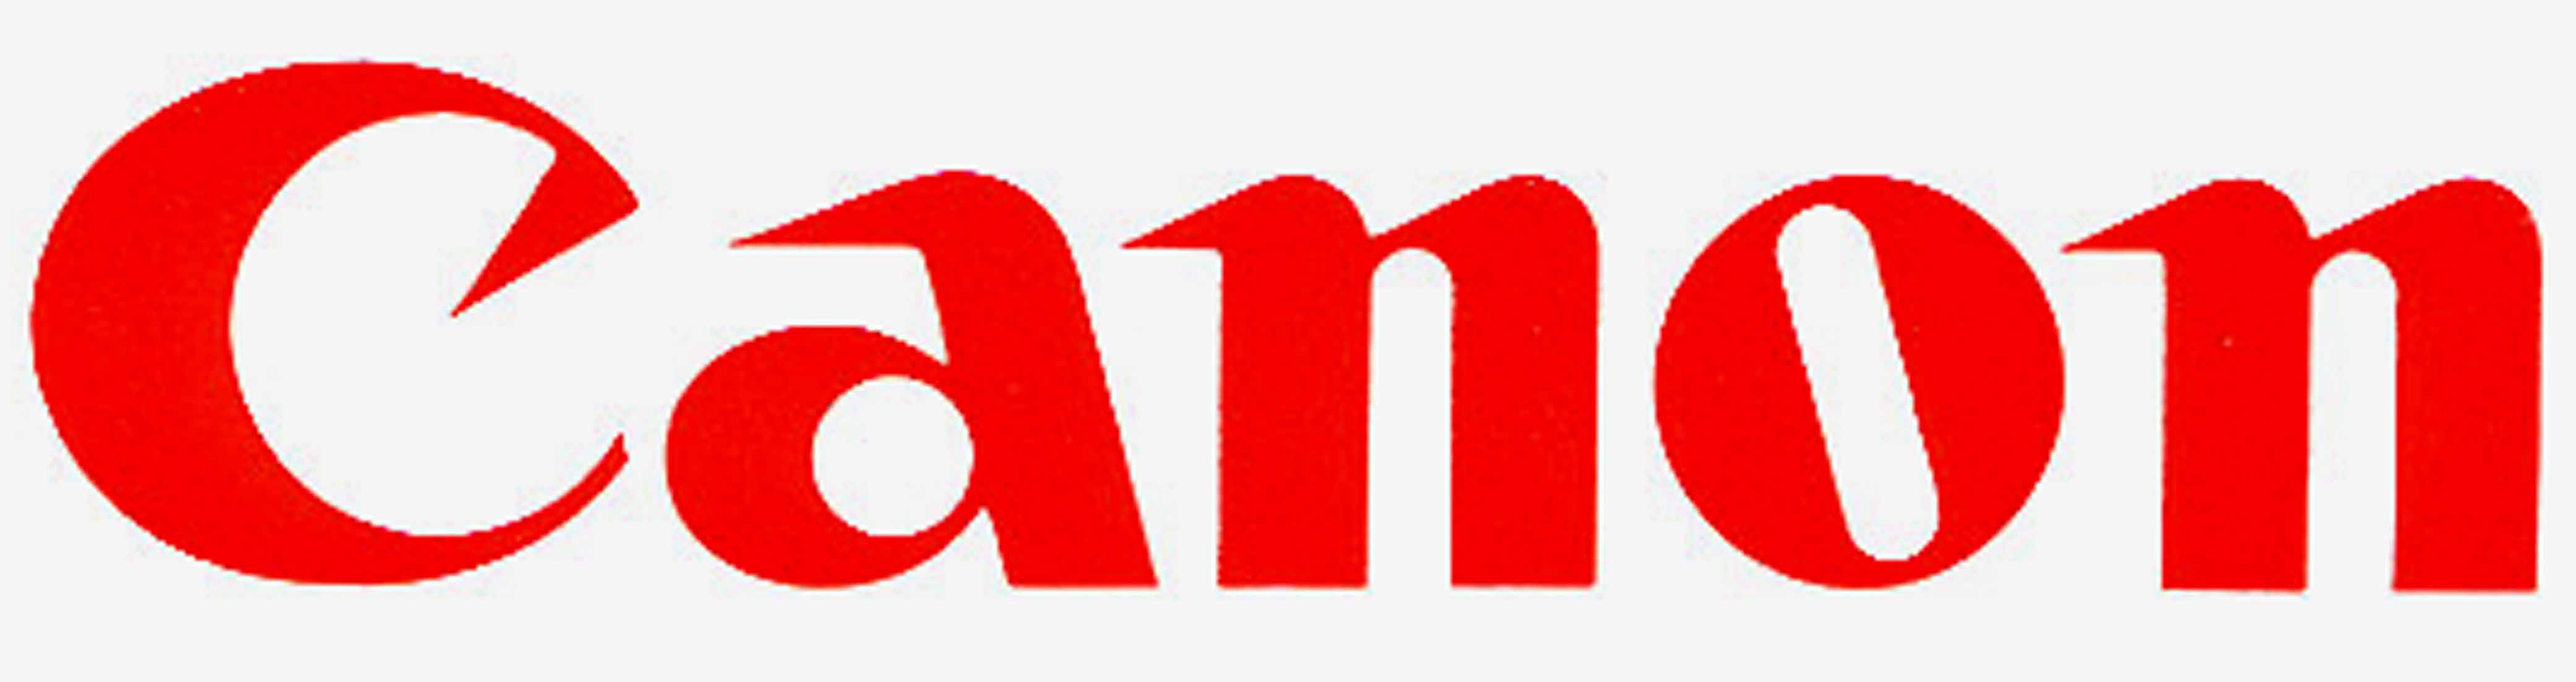 Canon Logo - logos] CANON logo changed again : MandelaEffect